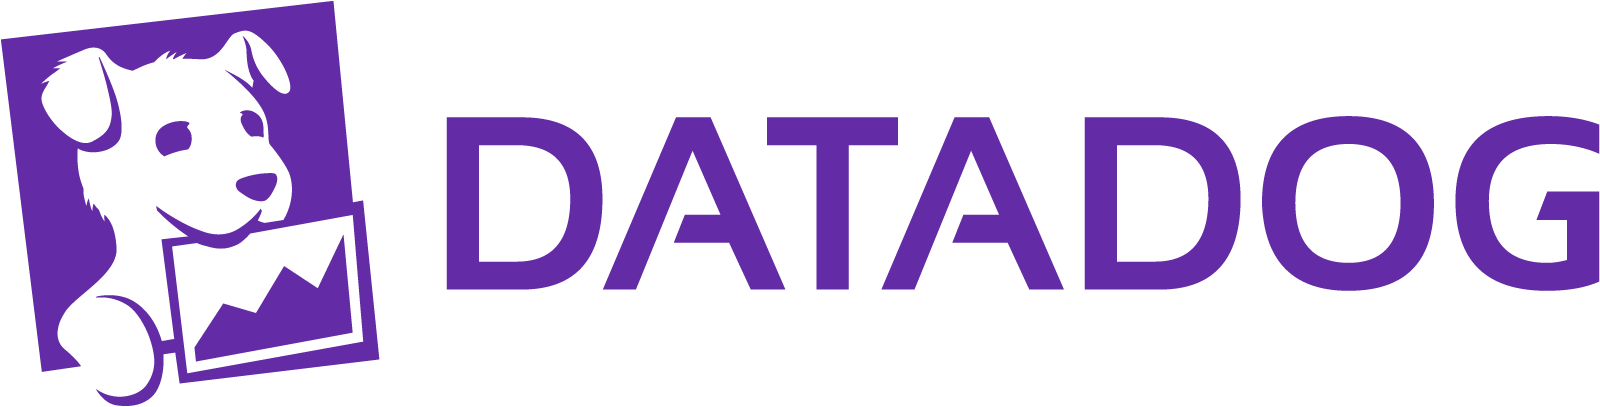 Datadog logo.